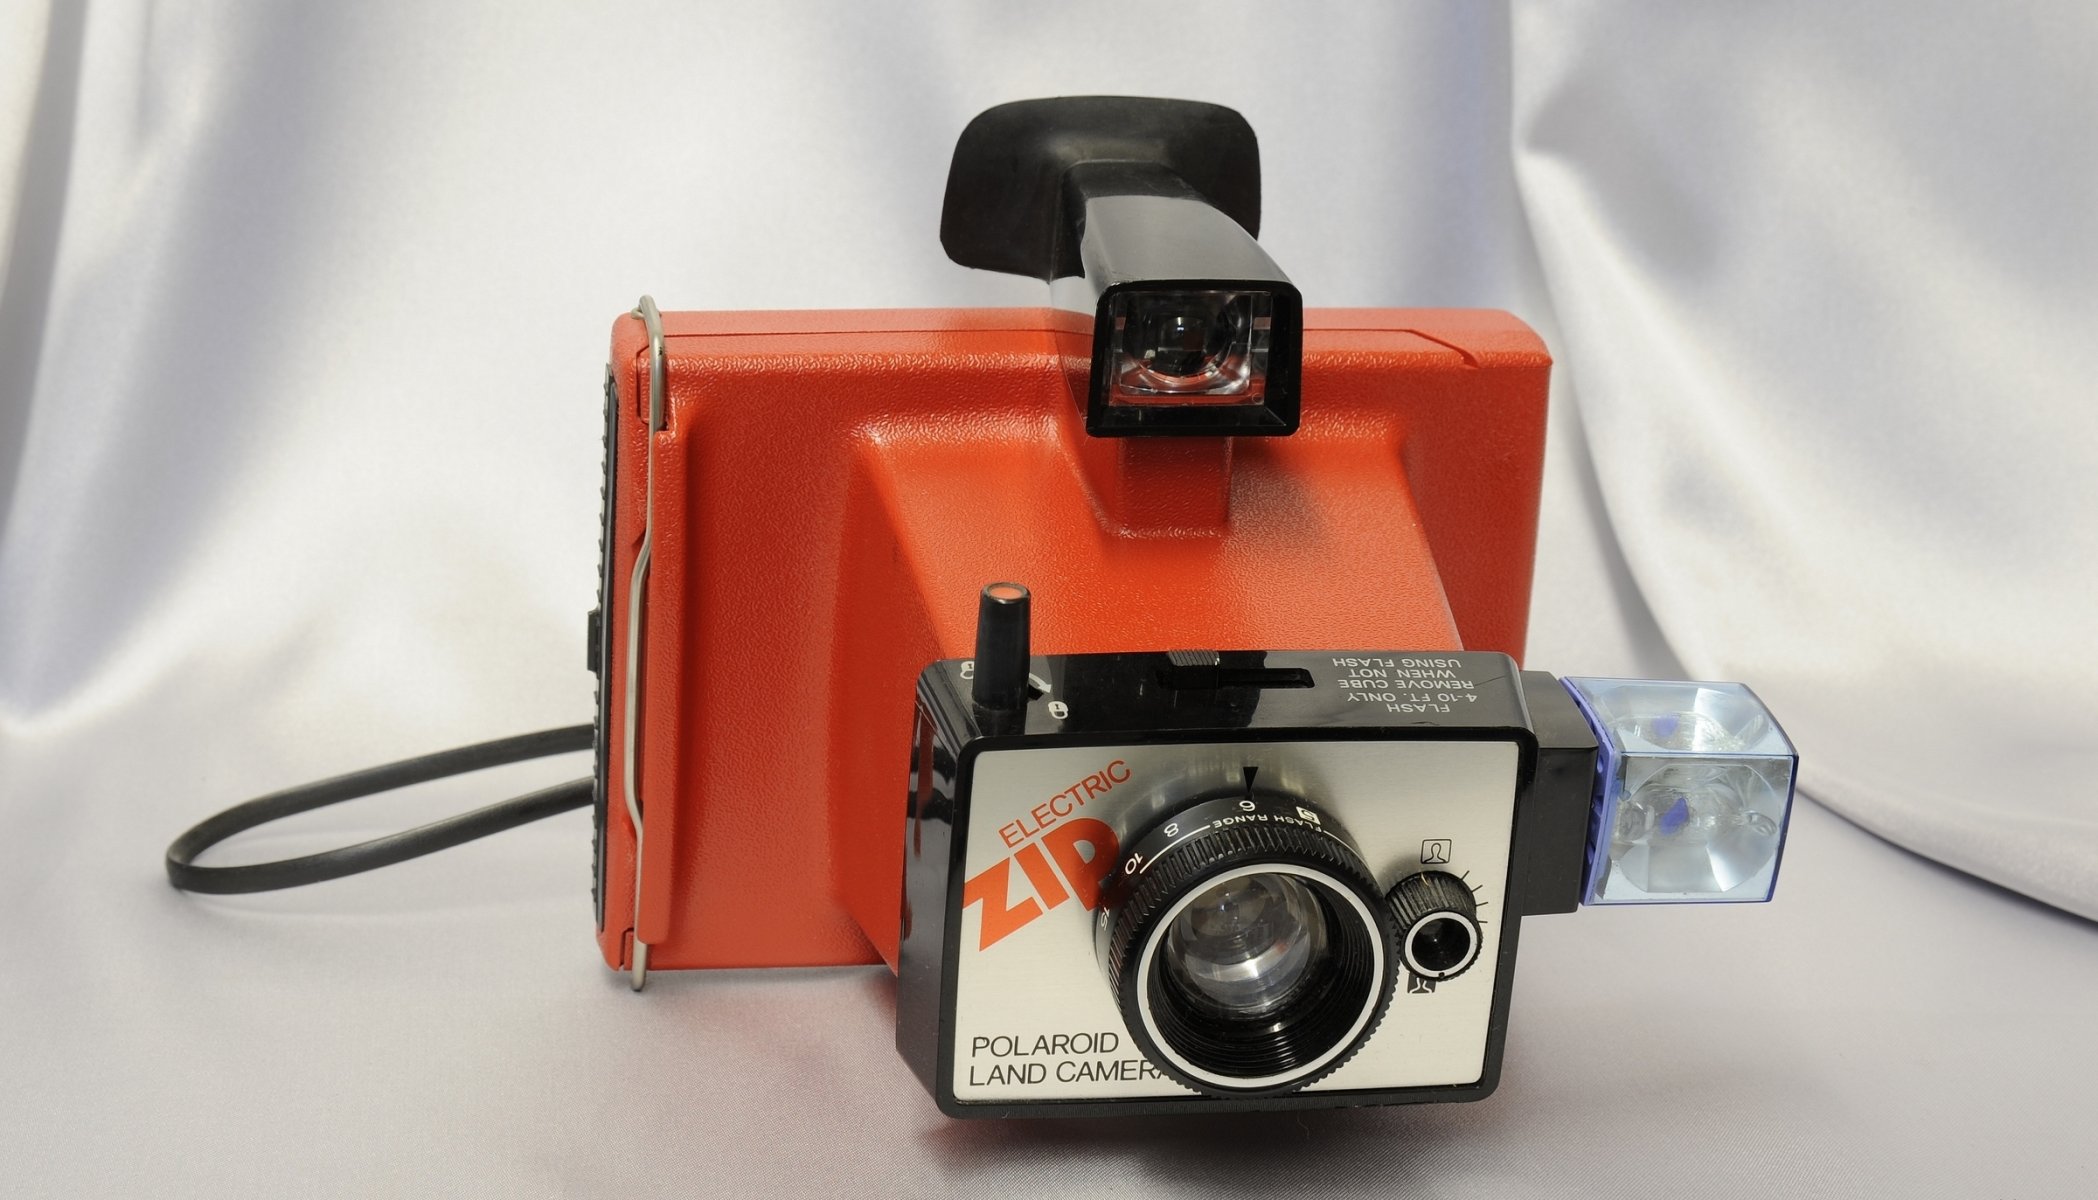 polaroid земля камеры электронные страна фотоаппарат пластиковый корпус объектив видоискатель вспышка фон